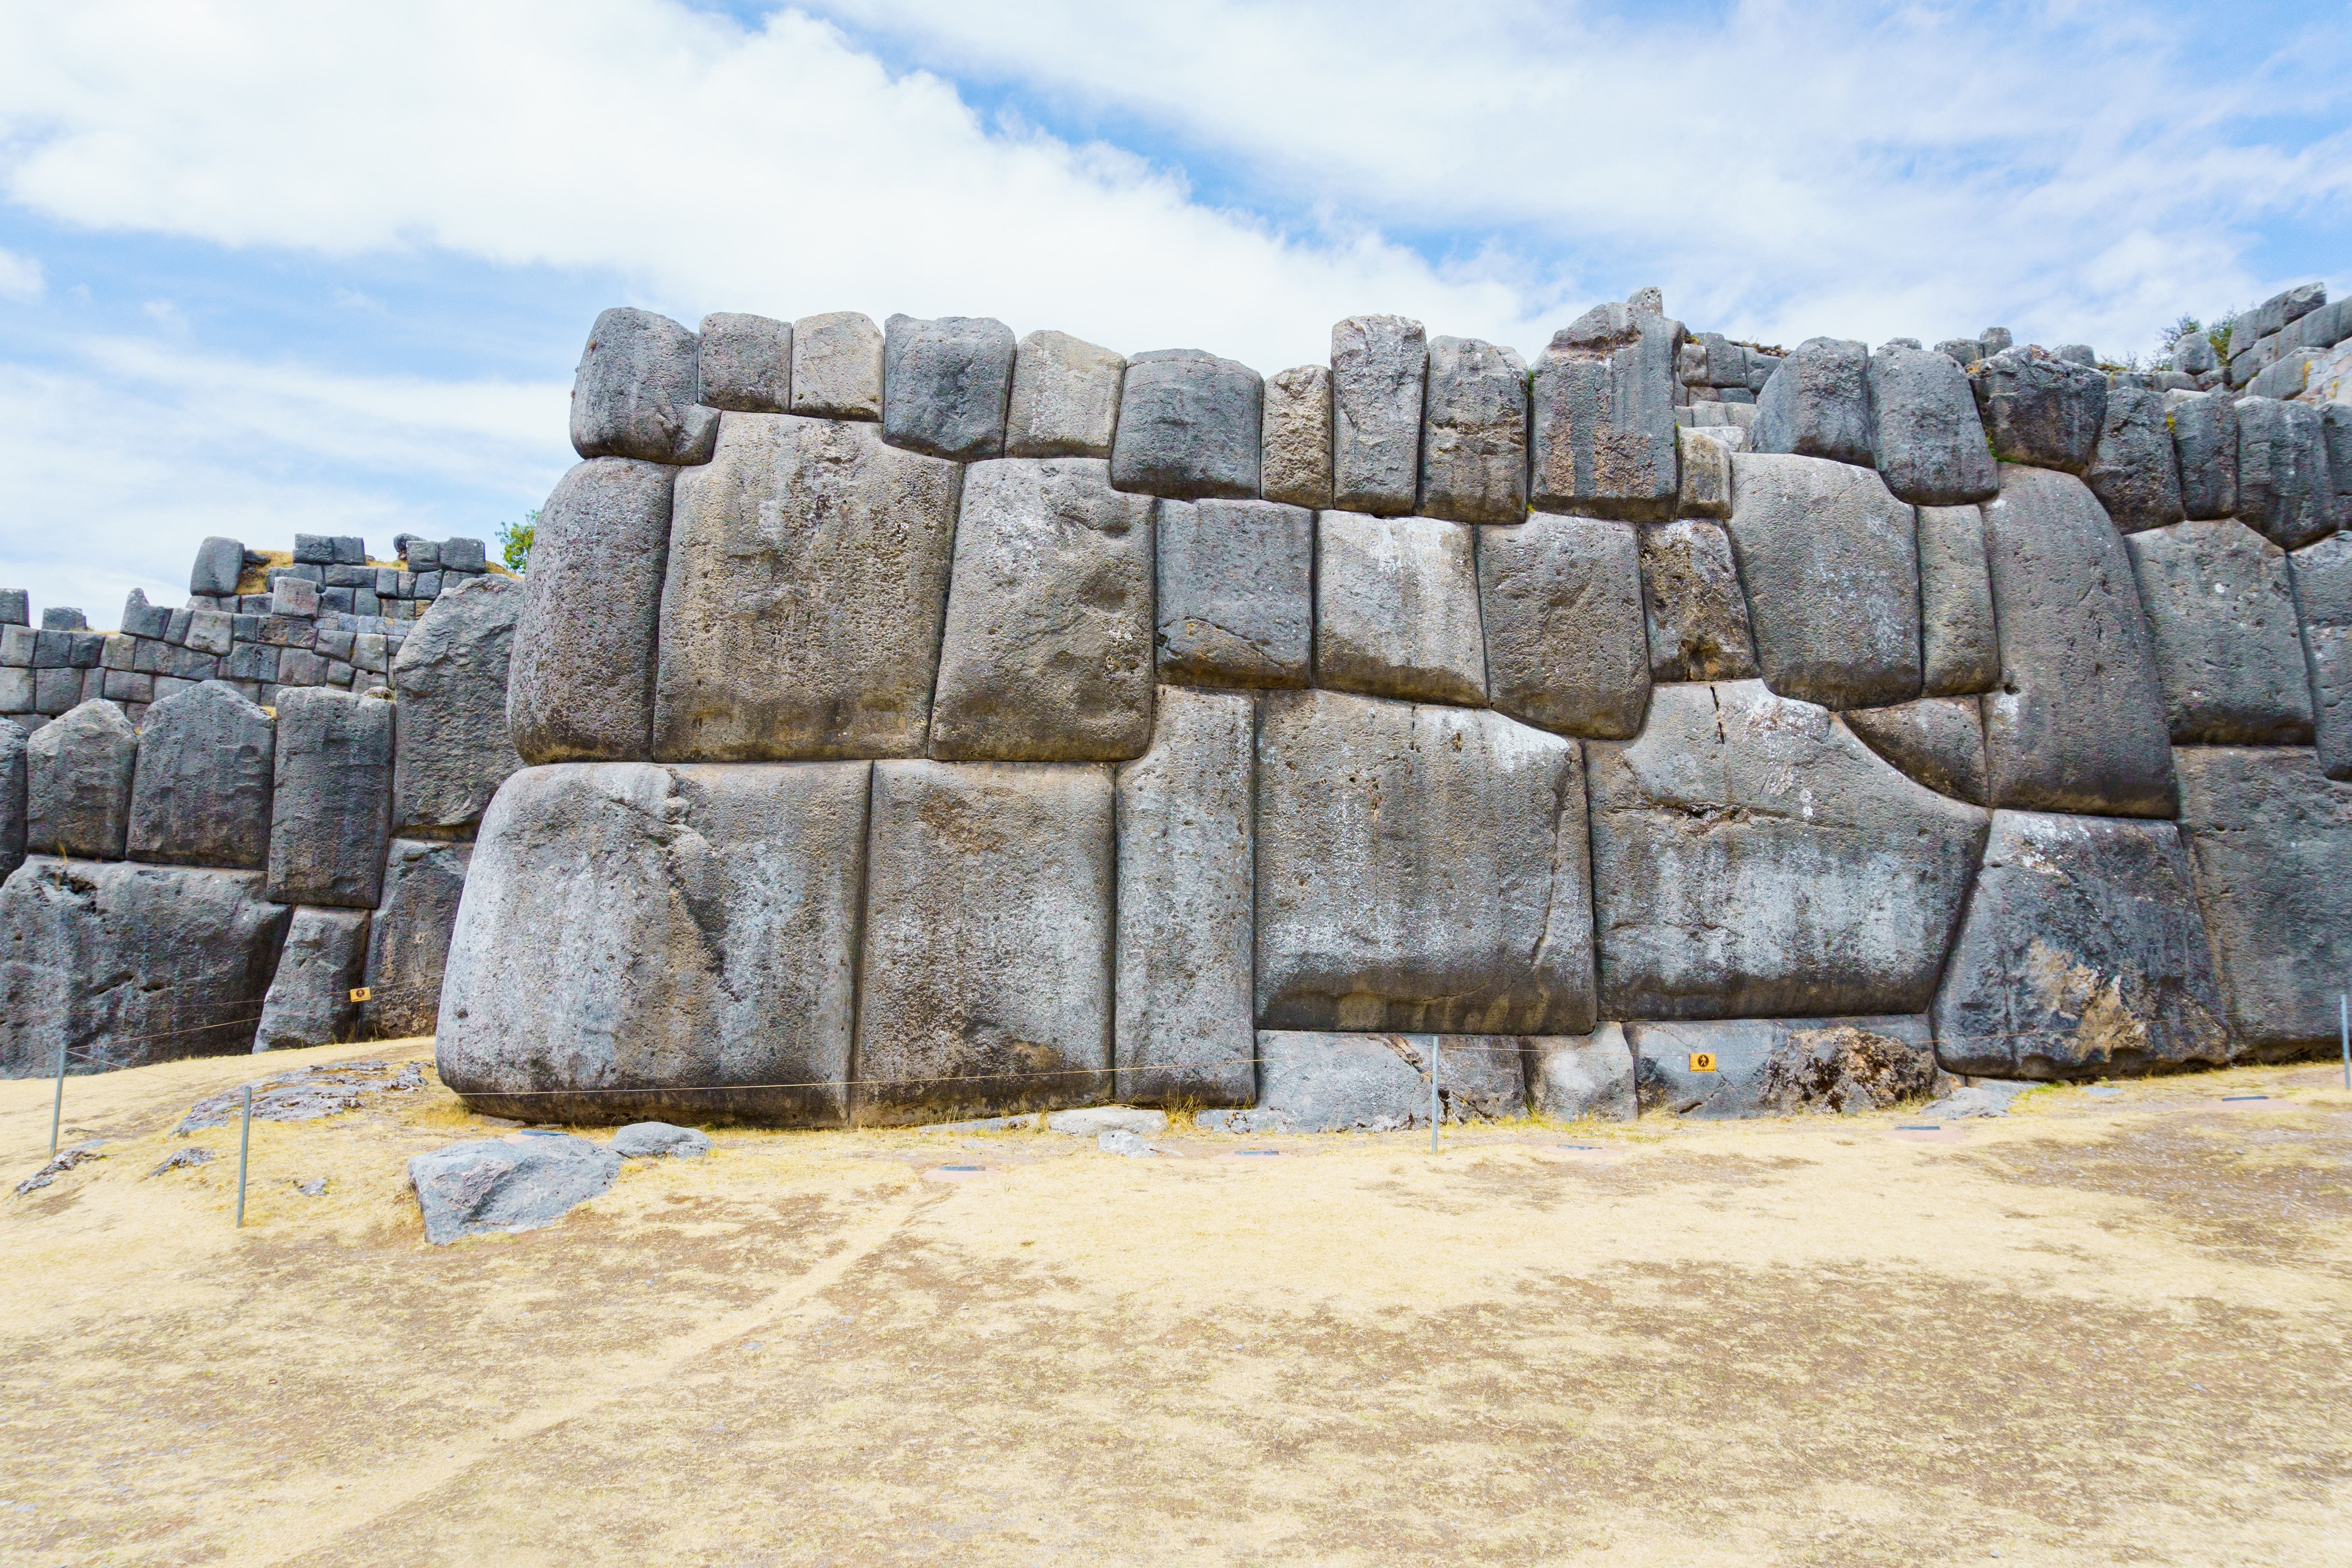 Inca Walls In Peru